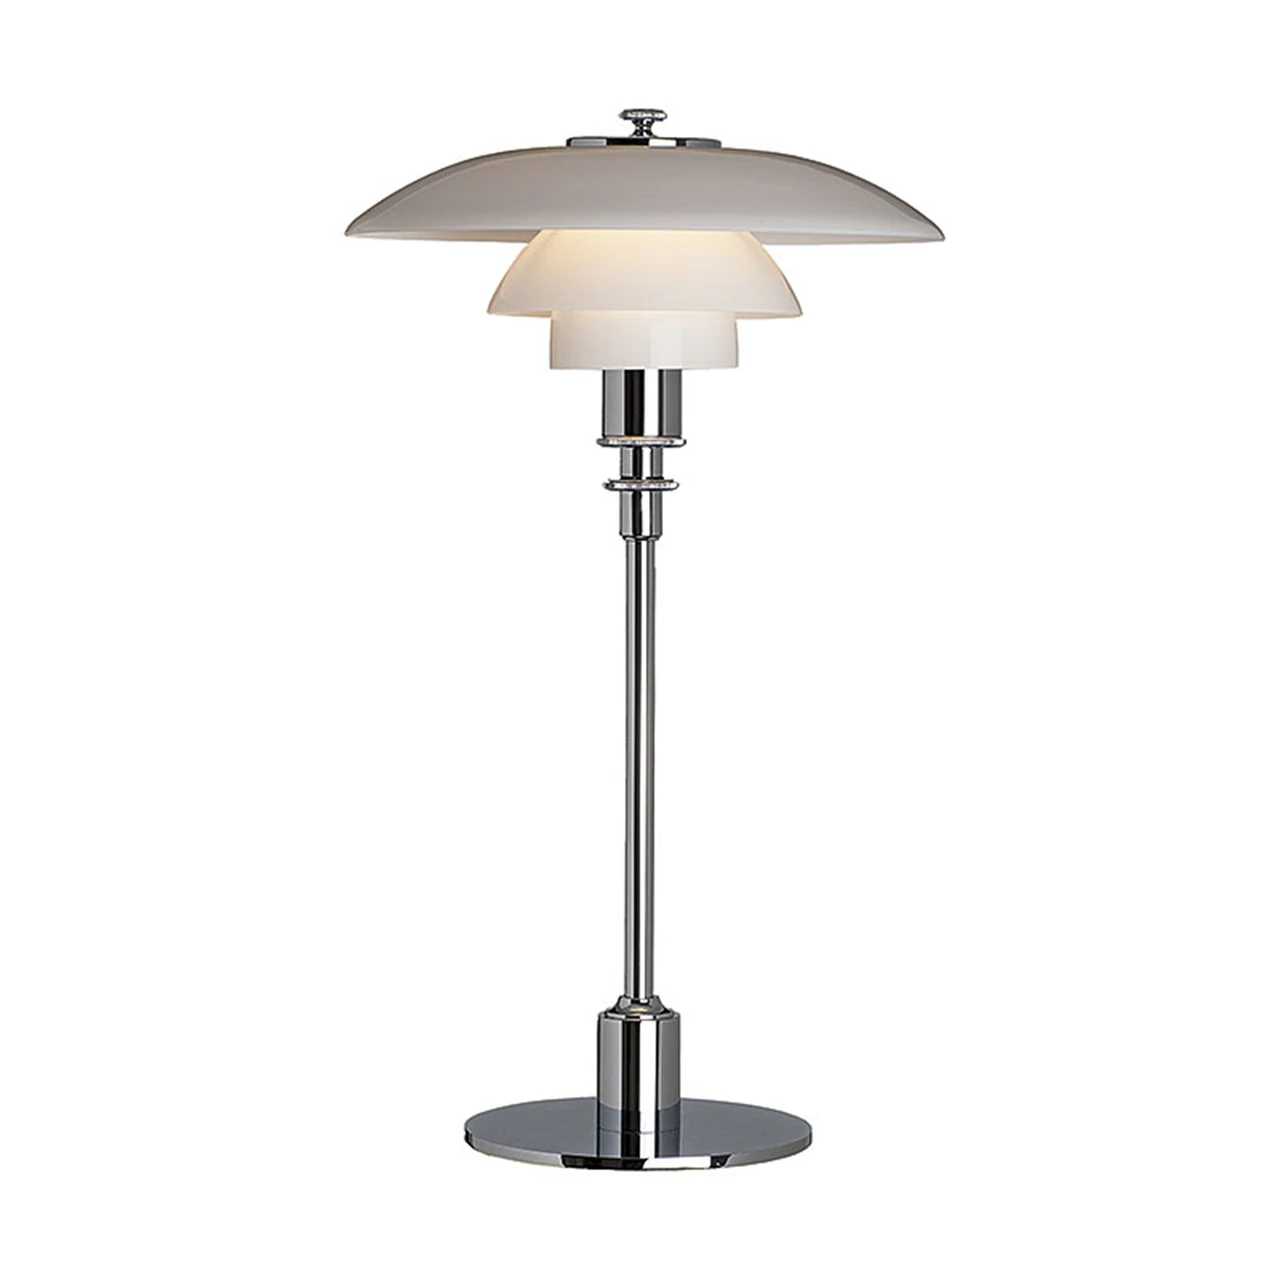 PH 2/1 Table Lamp High Gloss Chrome - Louis Poulsen - Buy online